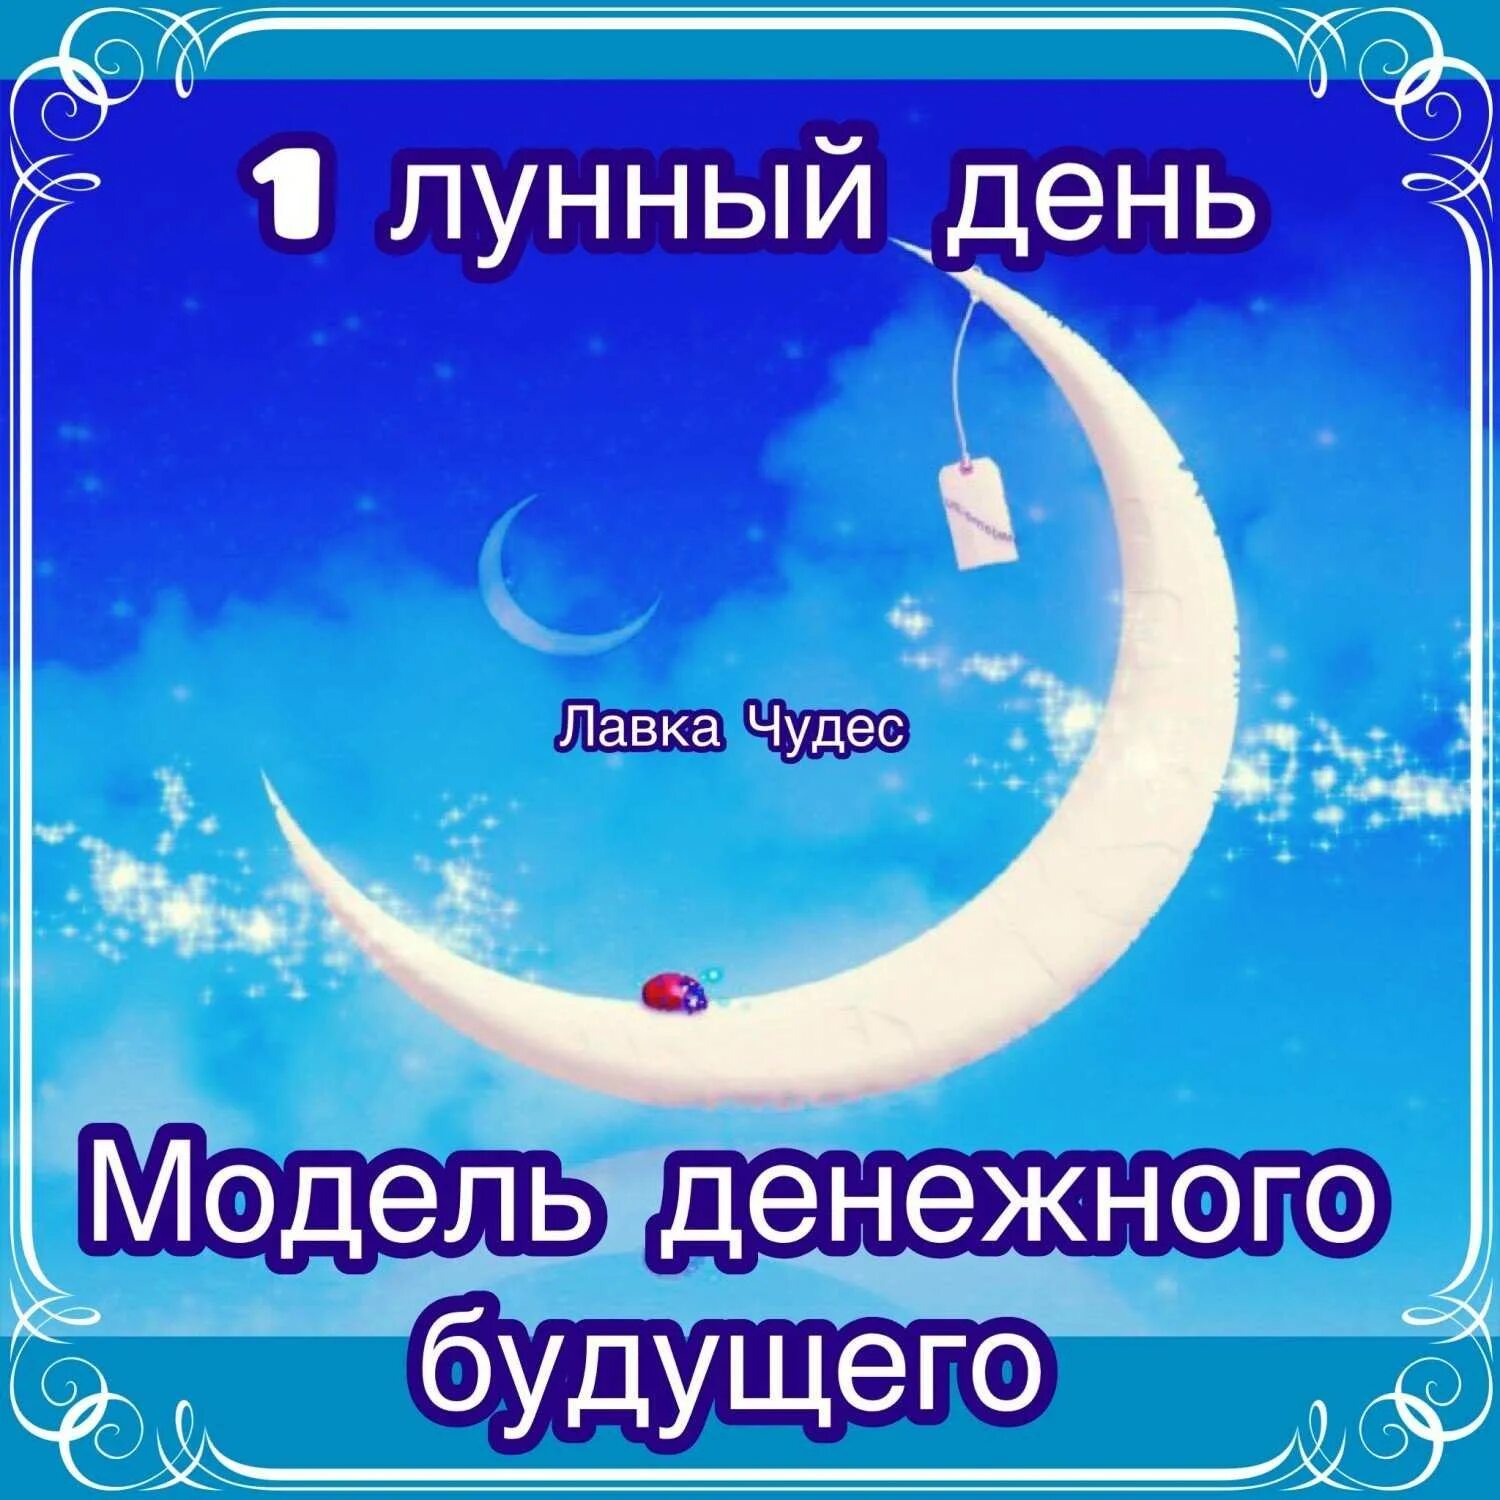 17 день луны. 1 Лунный день. Первый день Луны. Луна в первый лунный день. Новолуние первый лунный день.